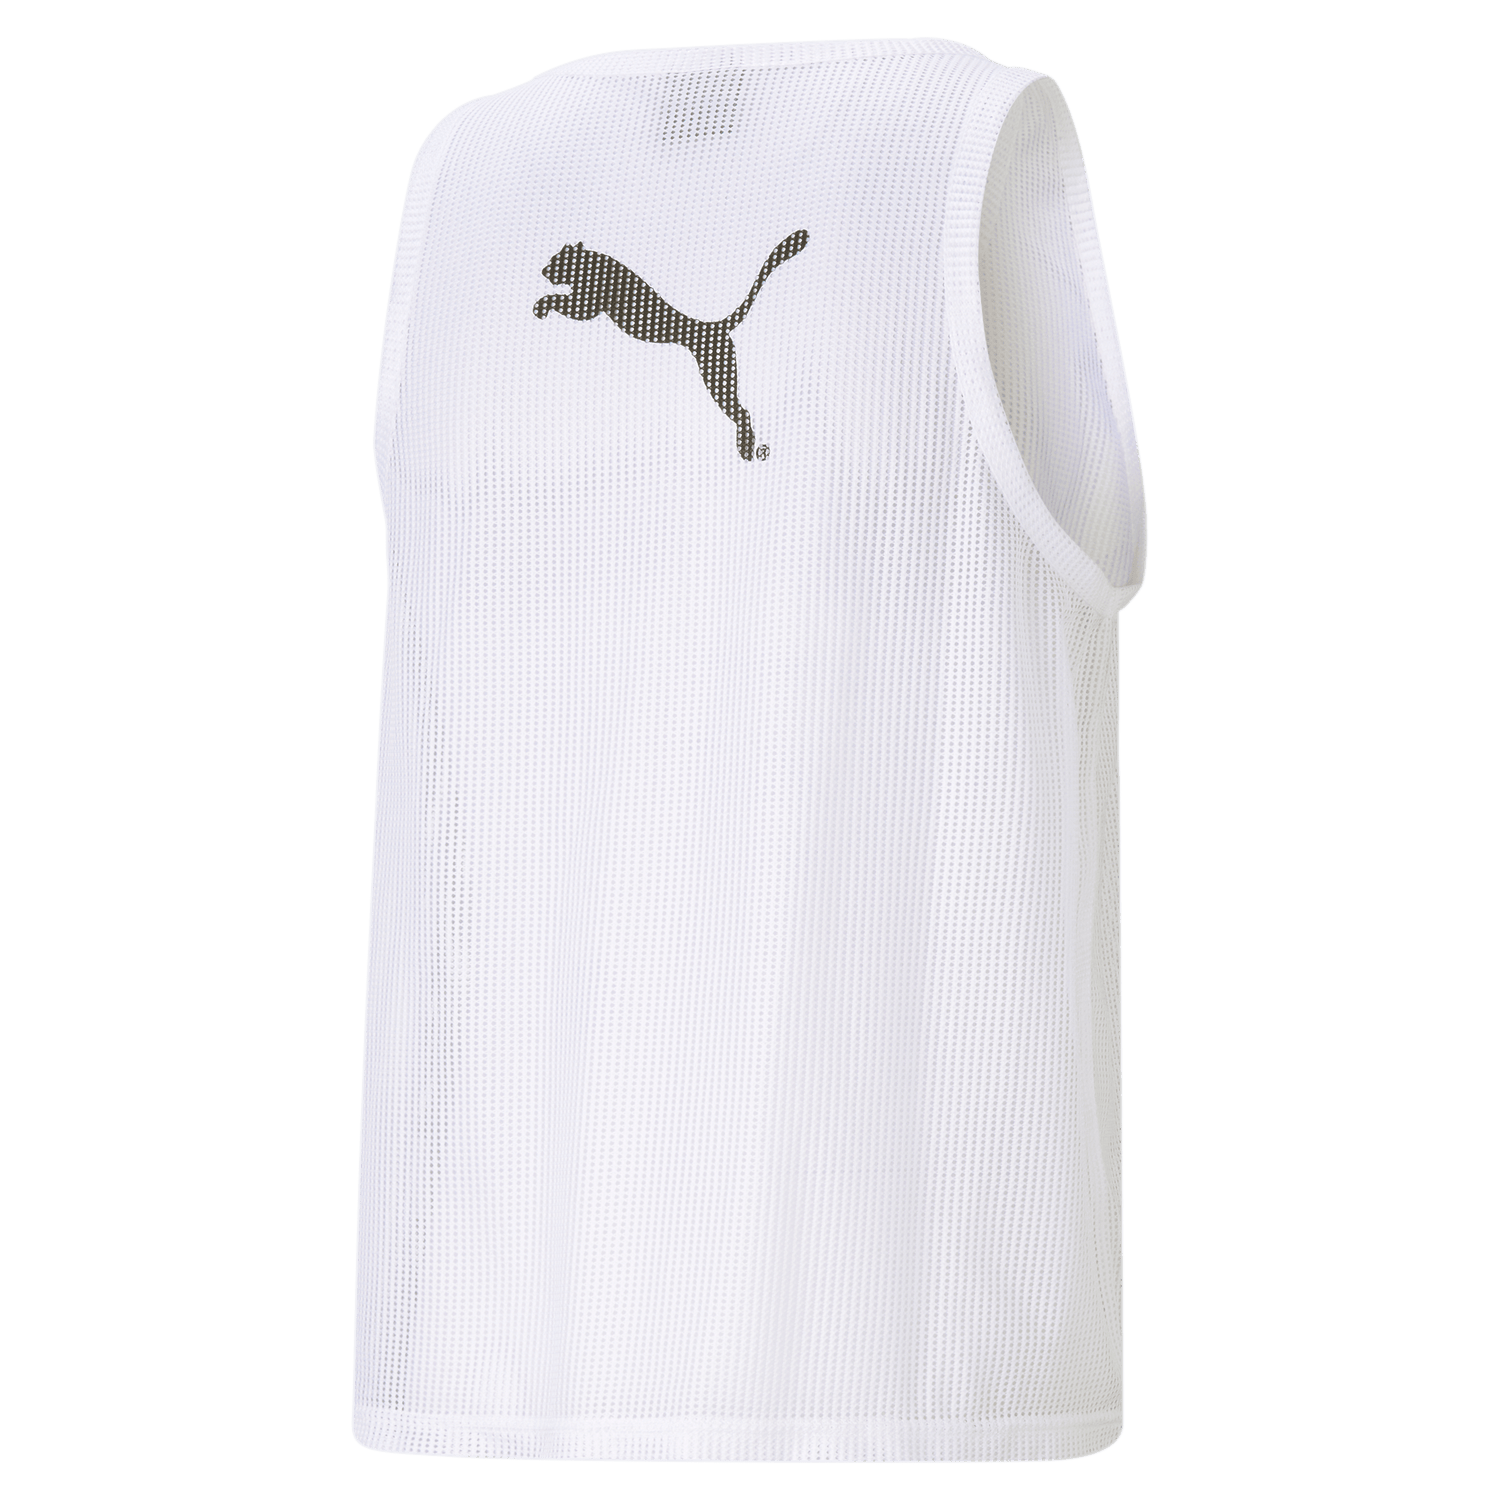 Puma Mens Training Vest White (Back)